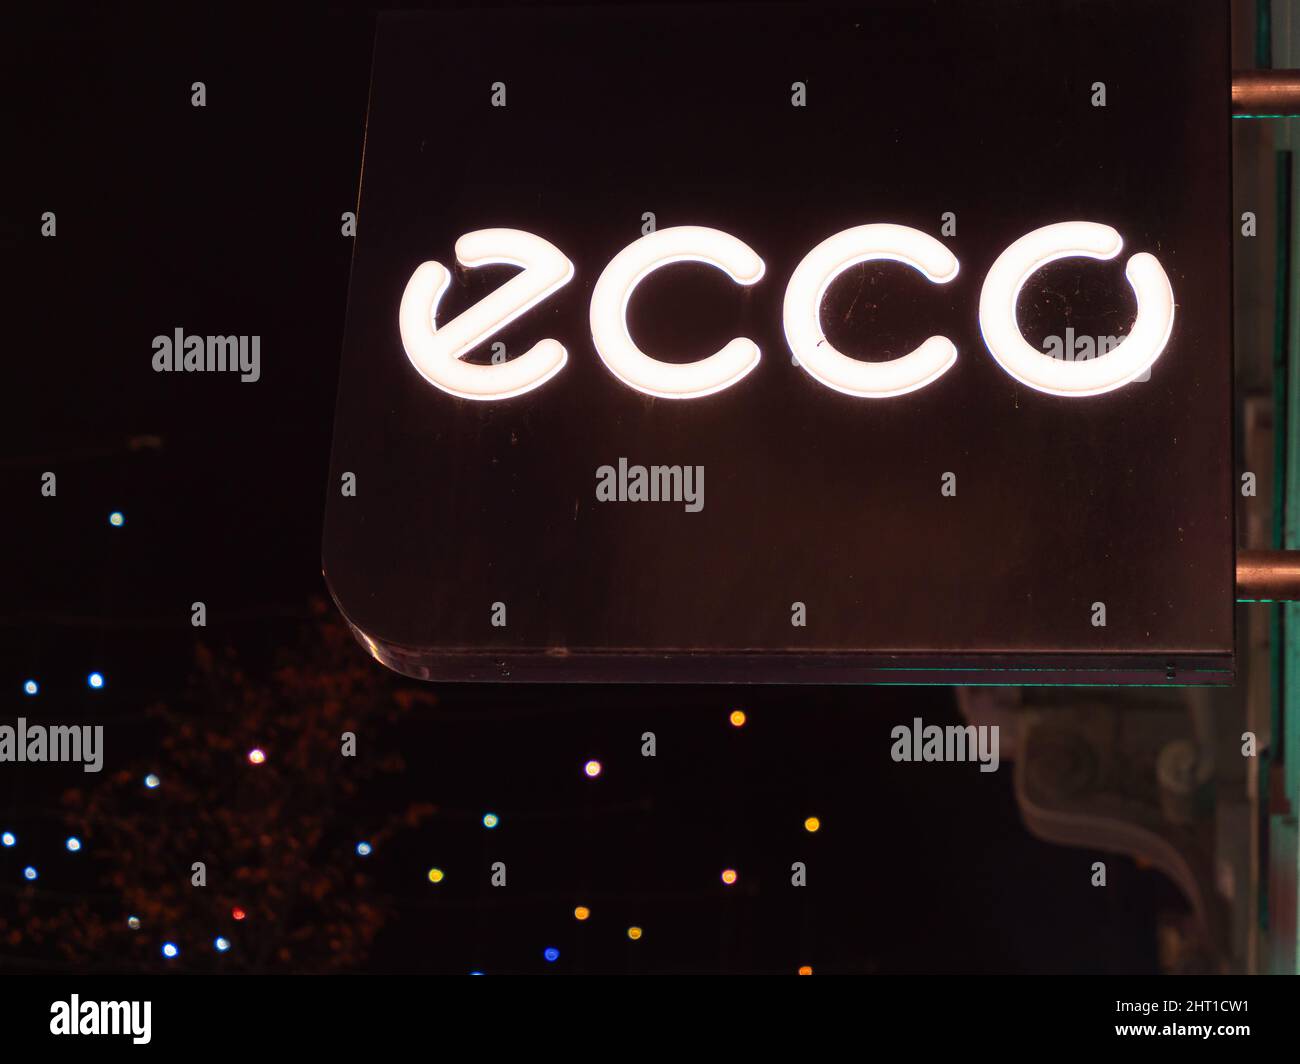 24 Ecco Sko Images, Stock Photos, 3D objects, & Vectors